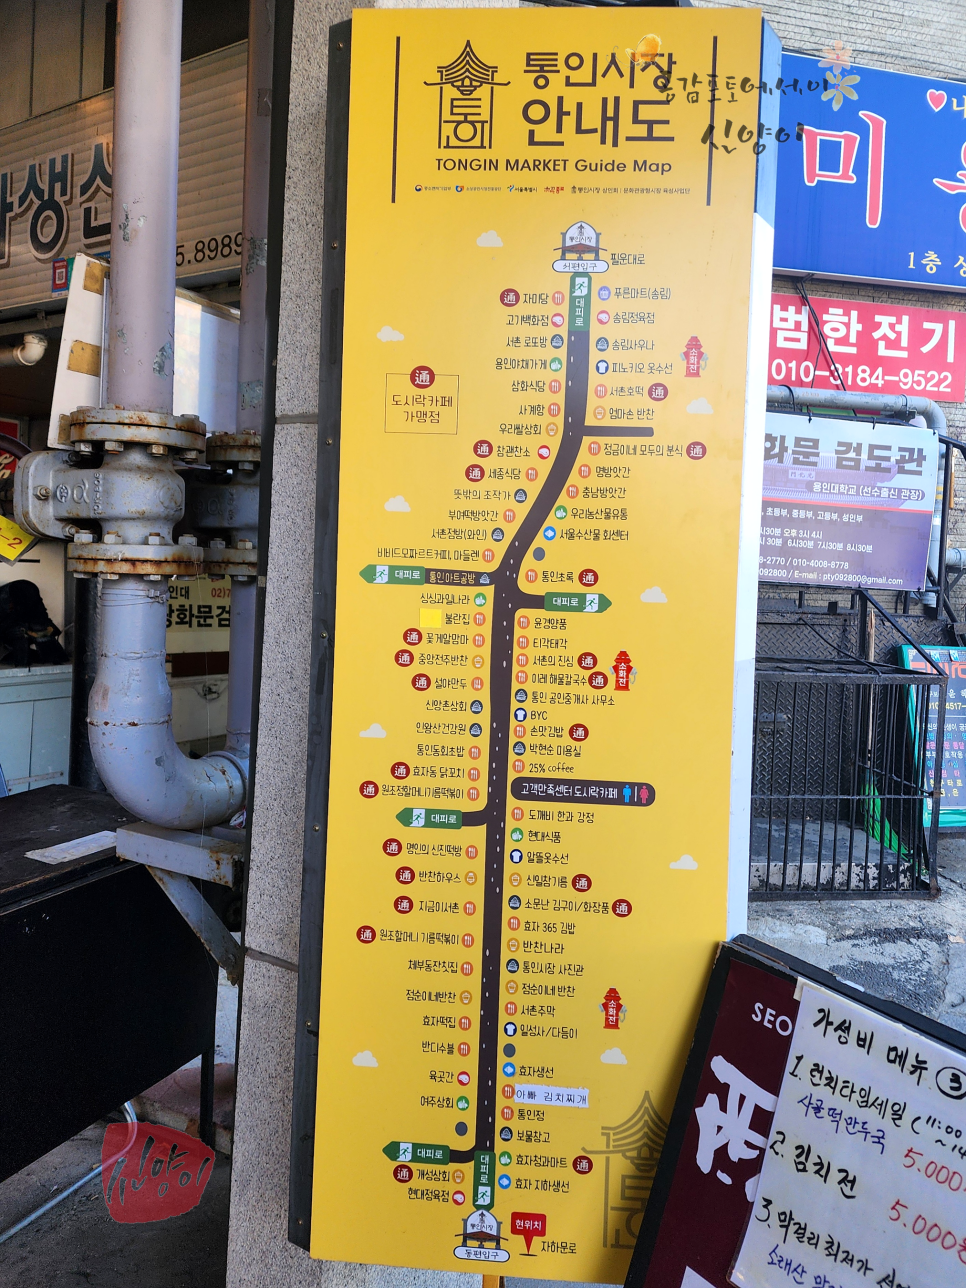 서울시장투어 종로 통인시장 데이트 기름떡볶이 주차